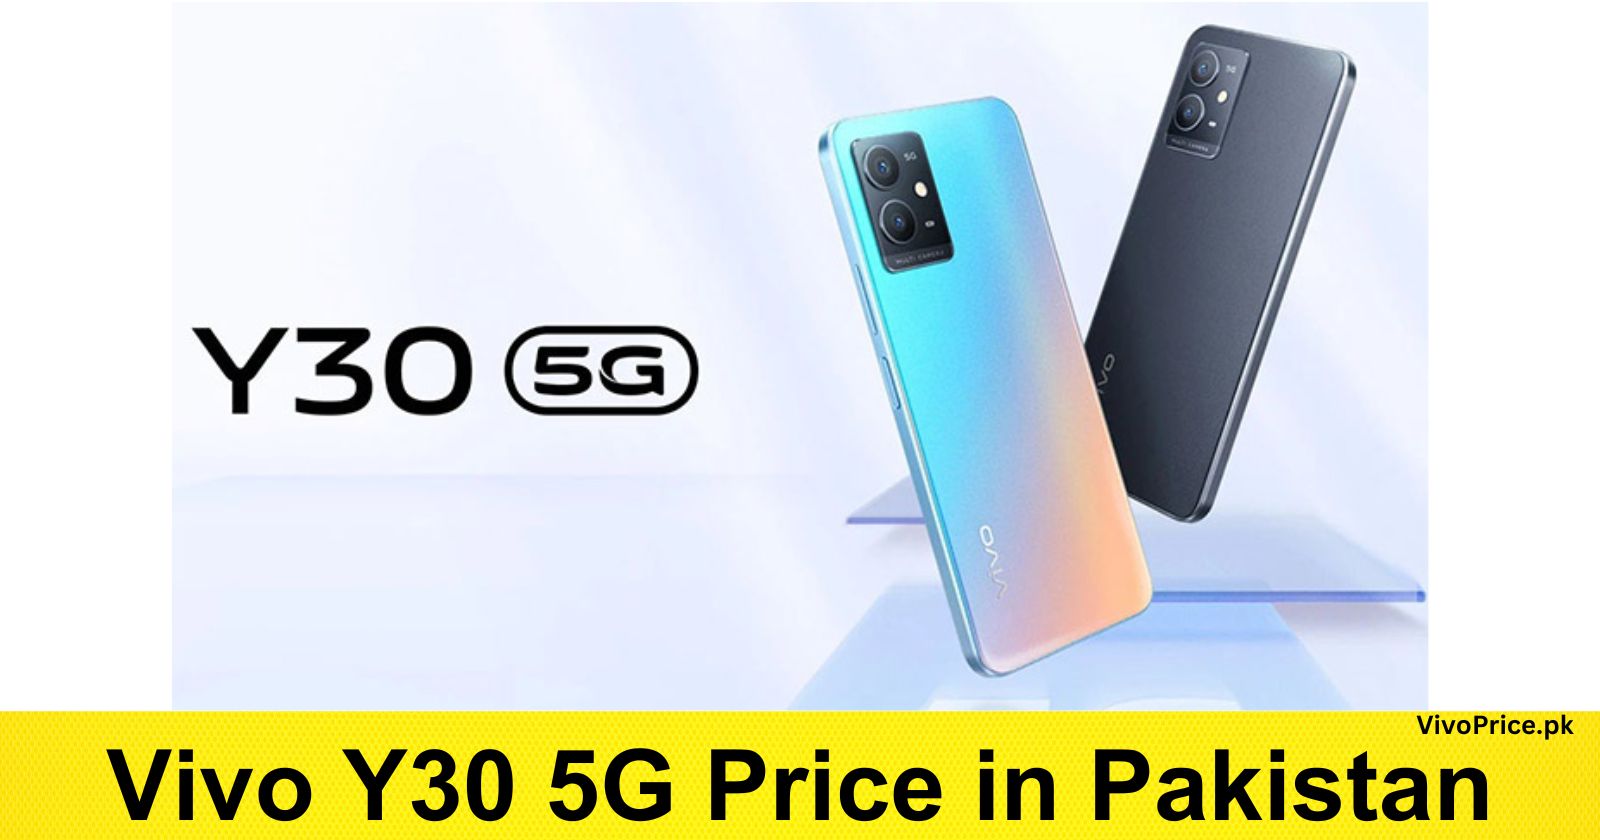 Vivo Y30 5G Price in Pakistan | VivoPrice.pk